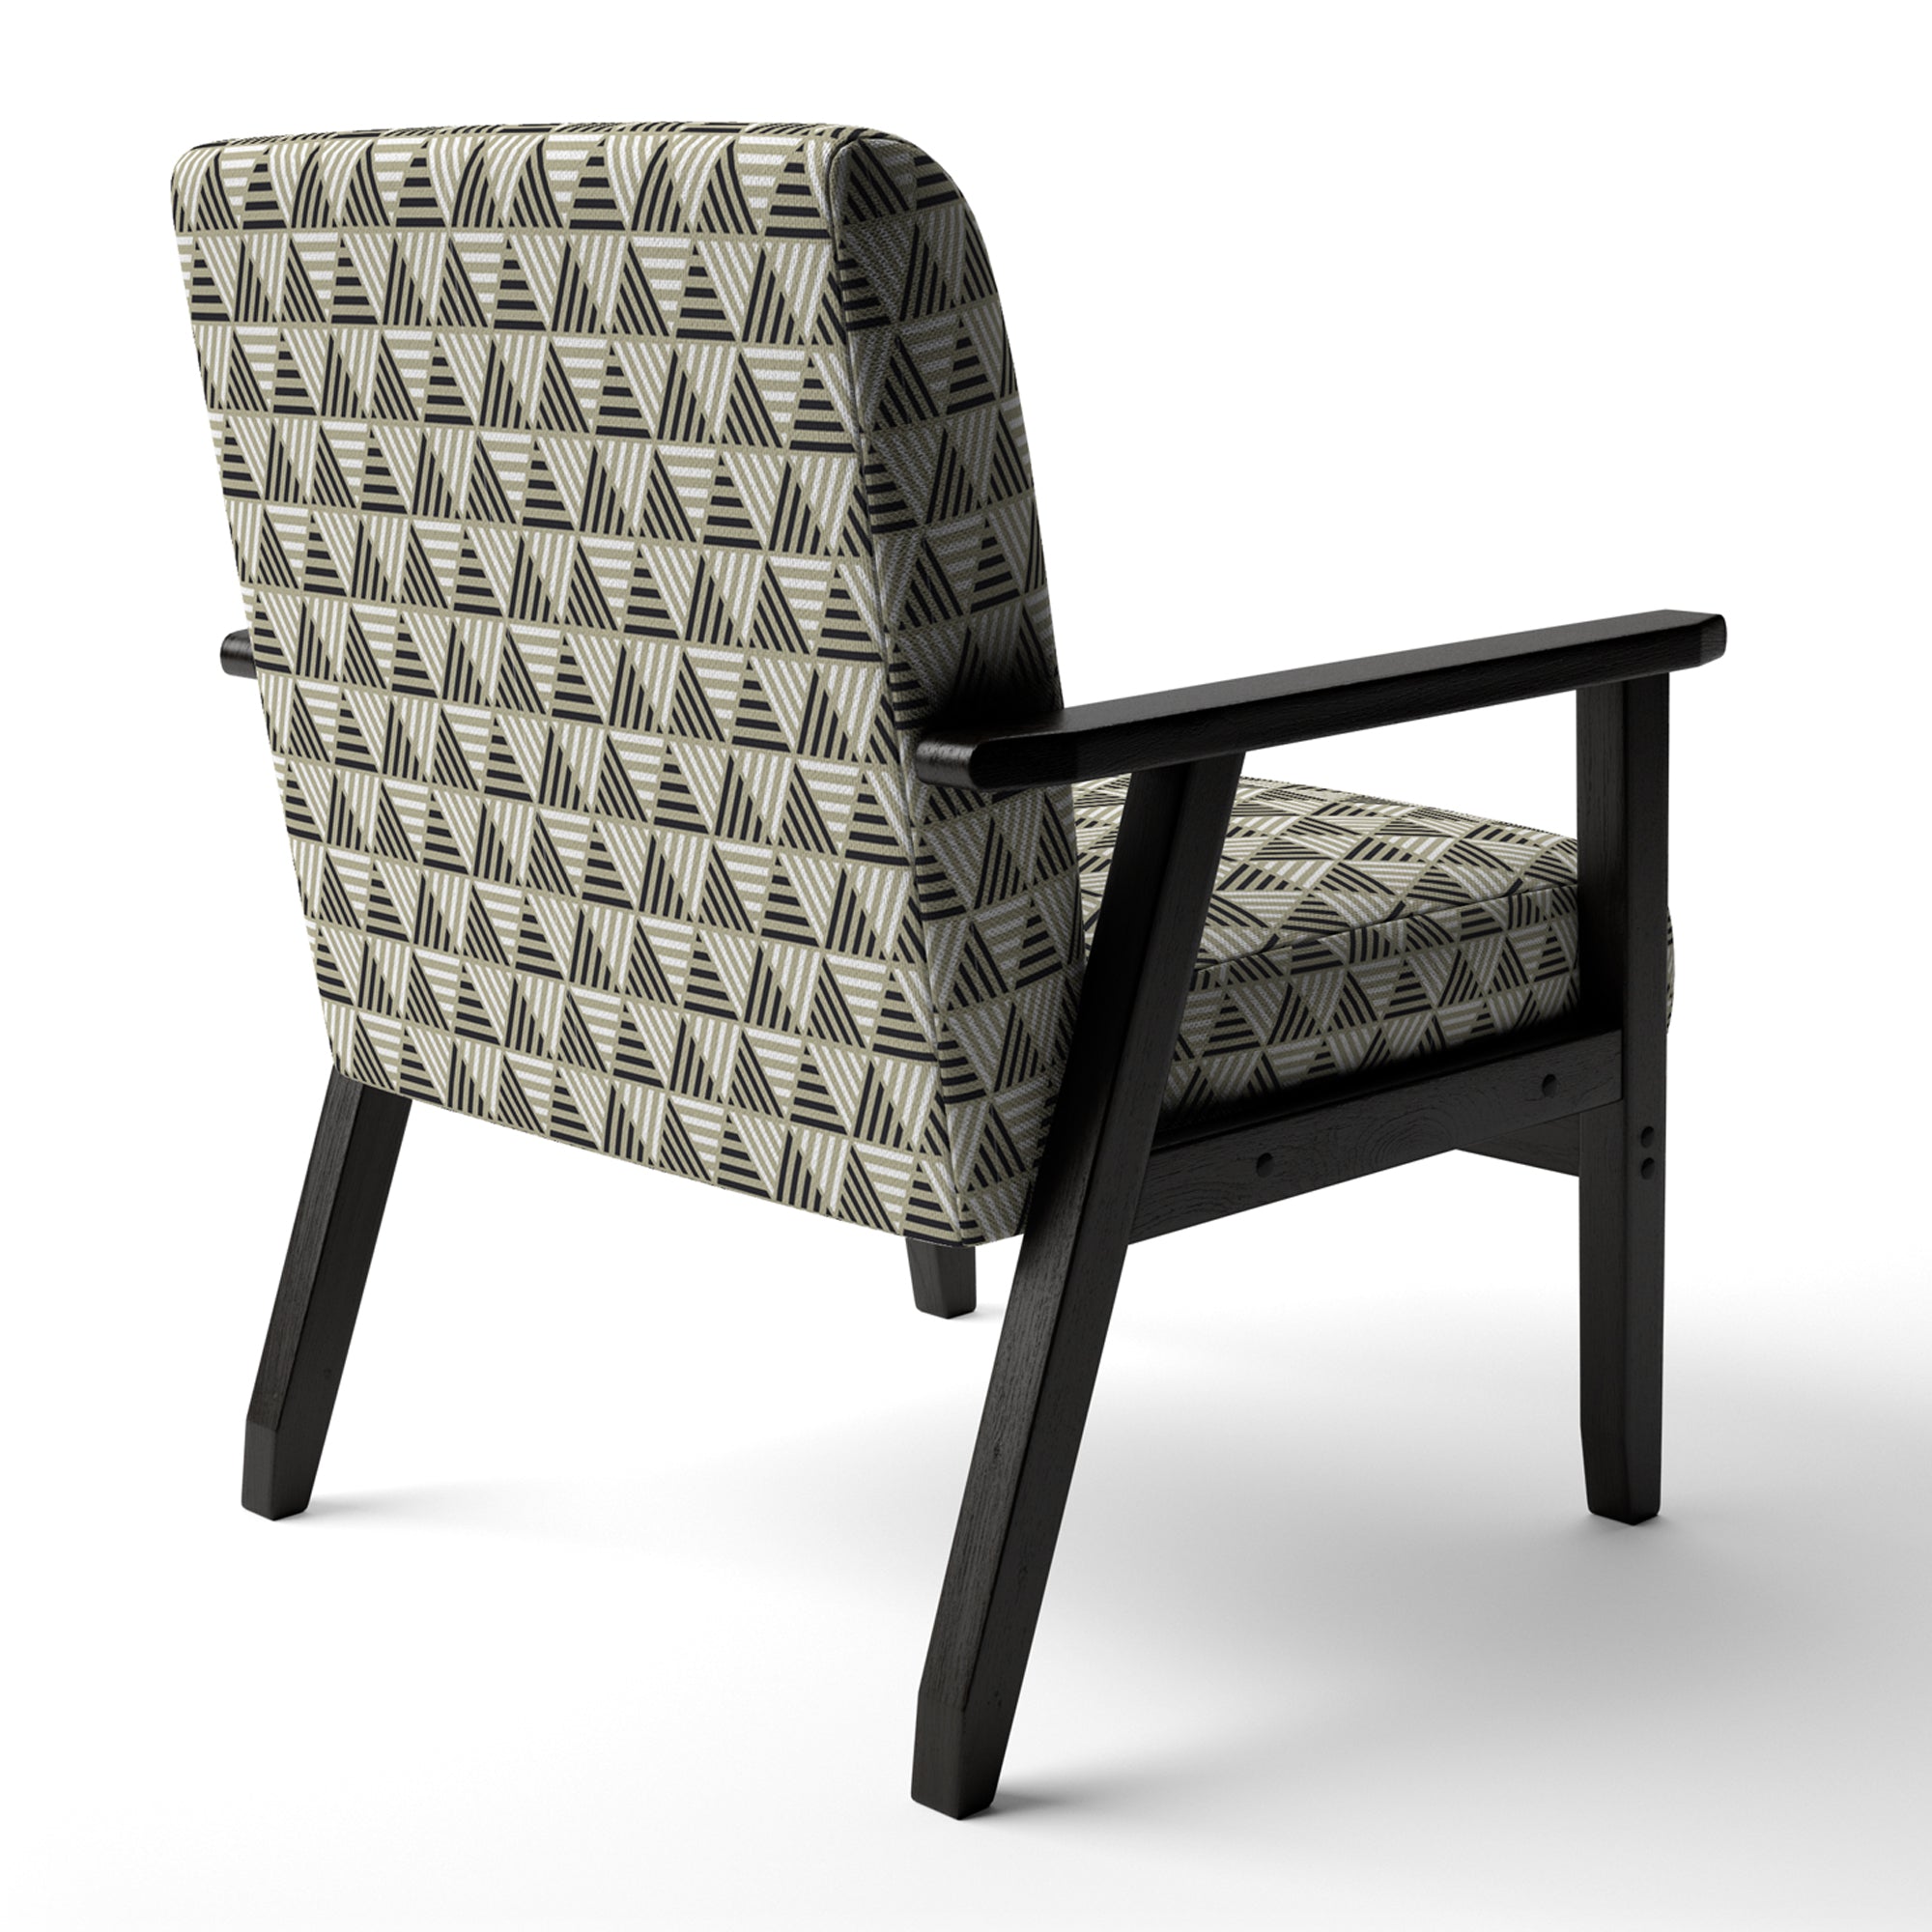 Triangular Retro Design VIII Mid-Century Accent Chair